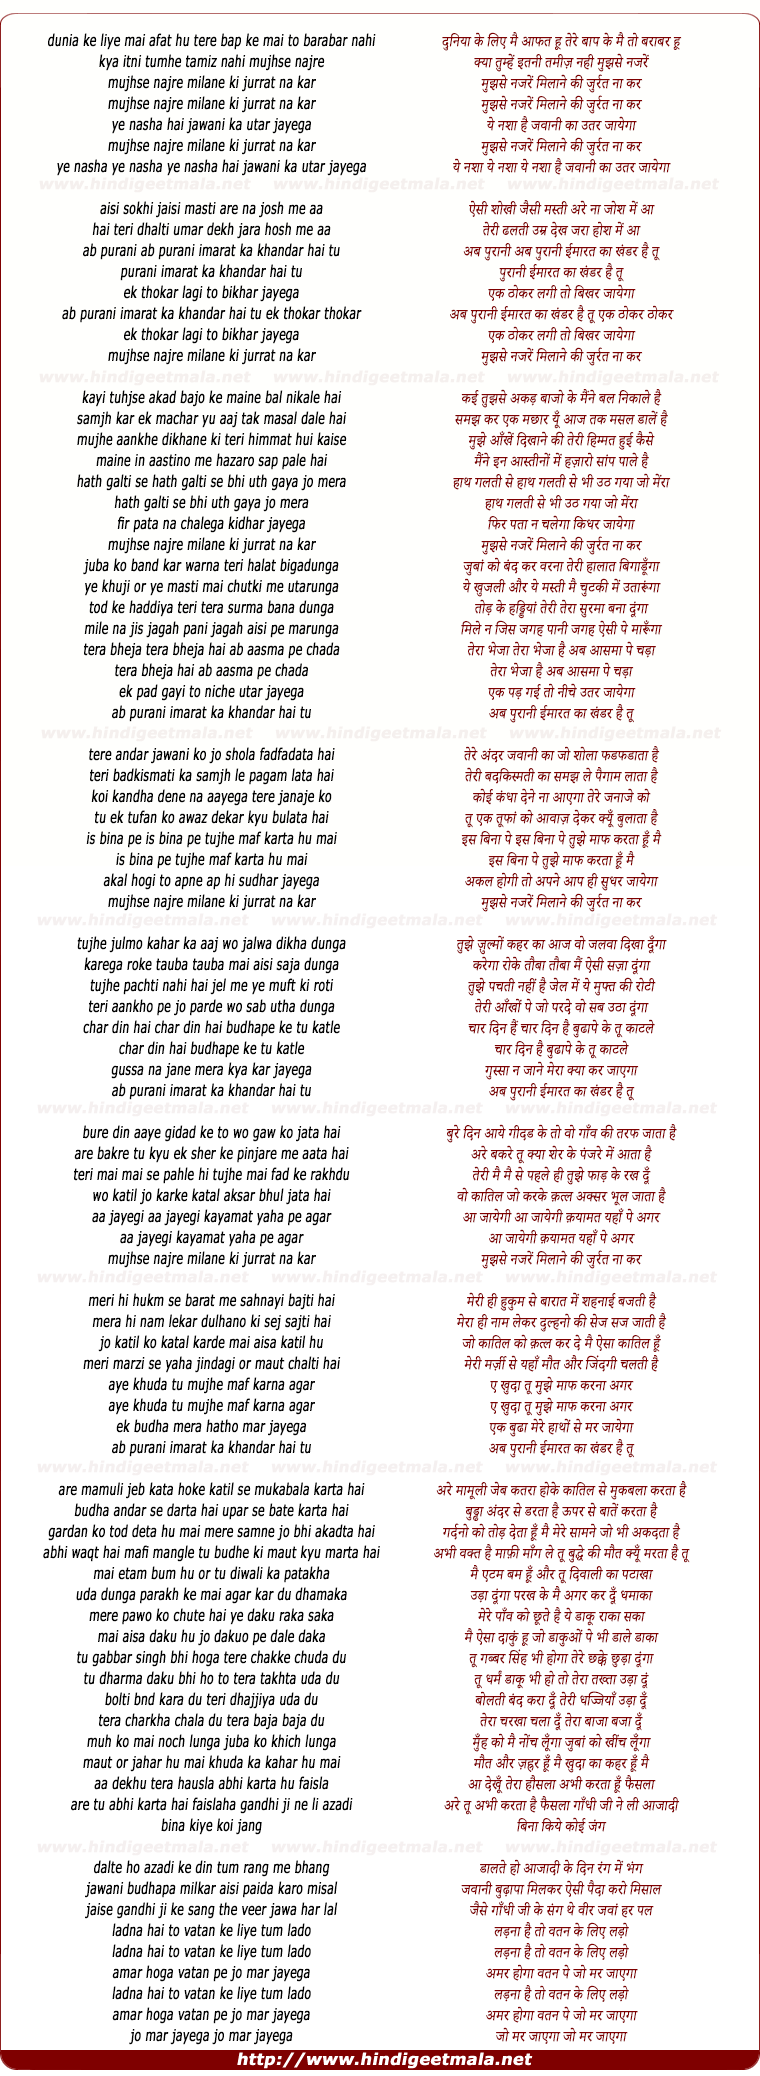 lyrics of song Mujhse Nazre Milane Ki Jrurat Na